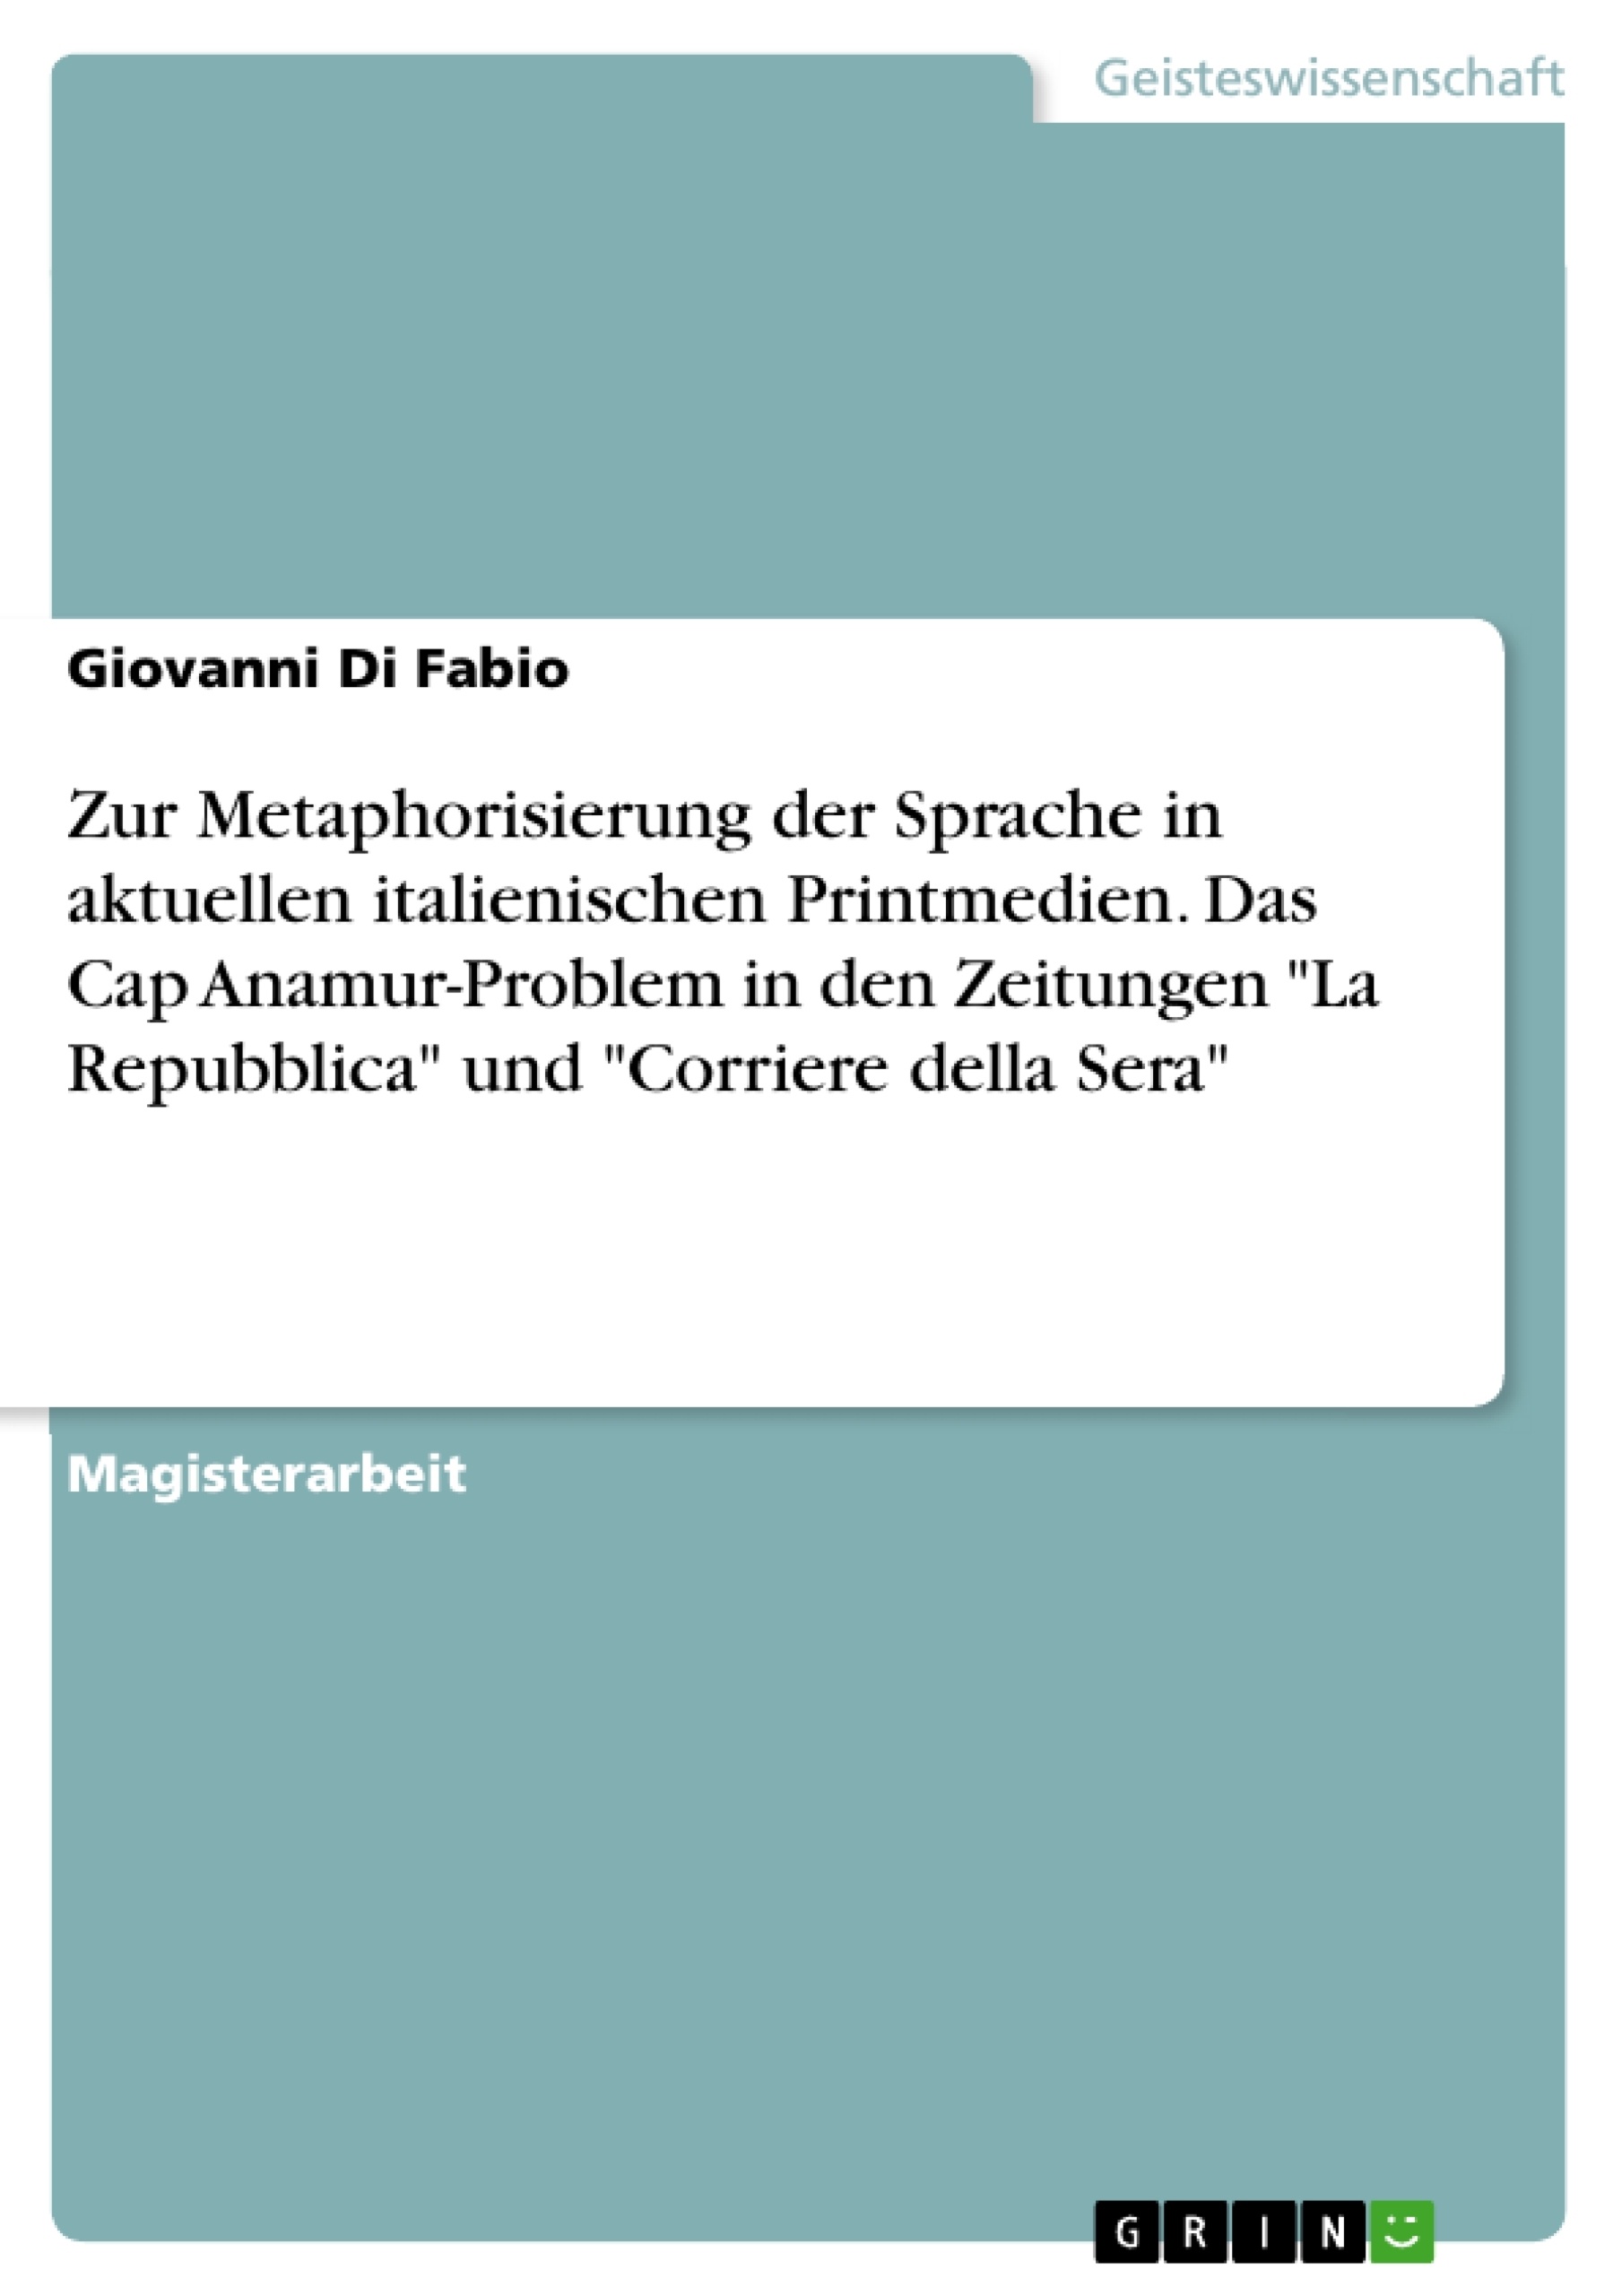 Titel: Zur Metaphorisierung der Sprache in aktuellen italienischen Printmedien. Das Cap Anamur-Problem in den Zeitungen "La Repubblica" und "Corriere della Sera"